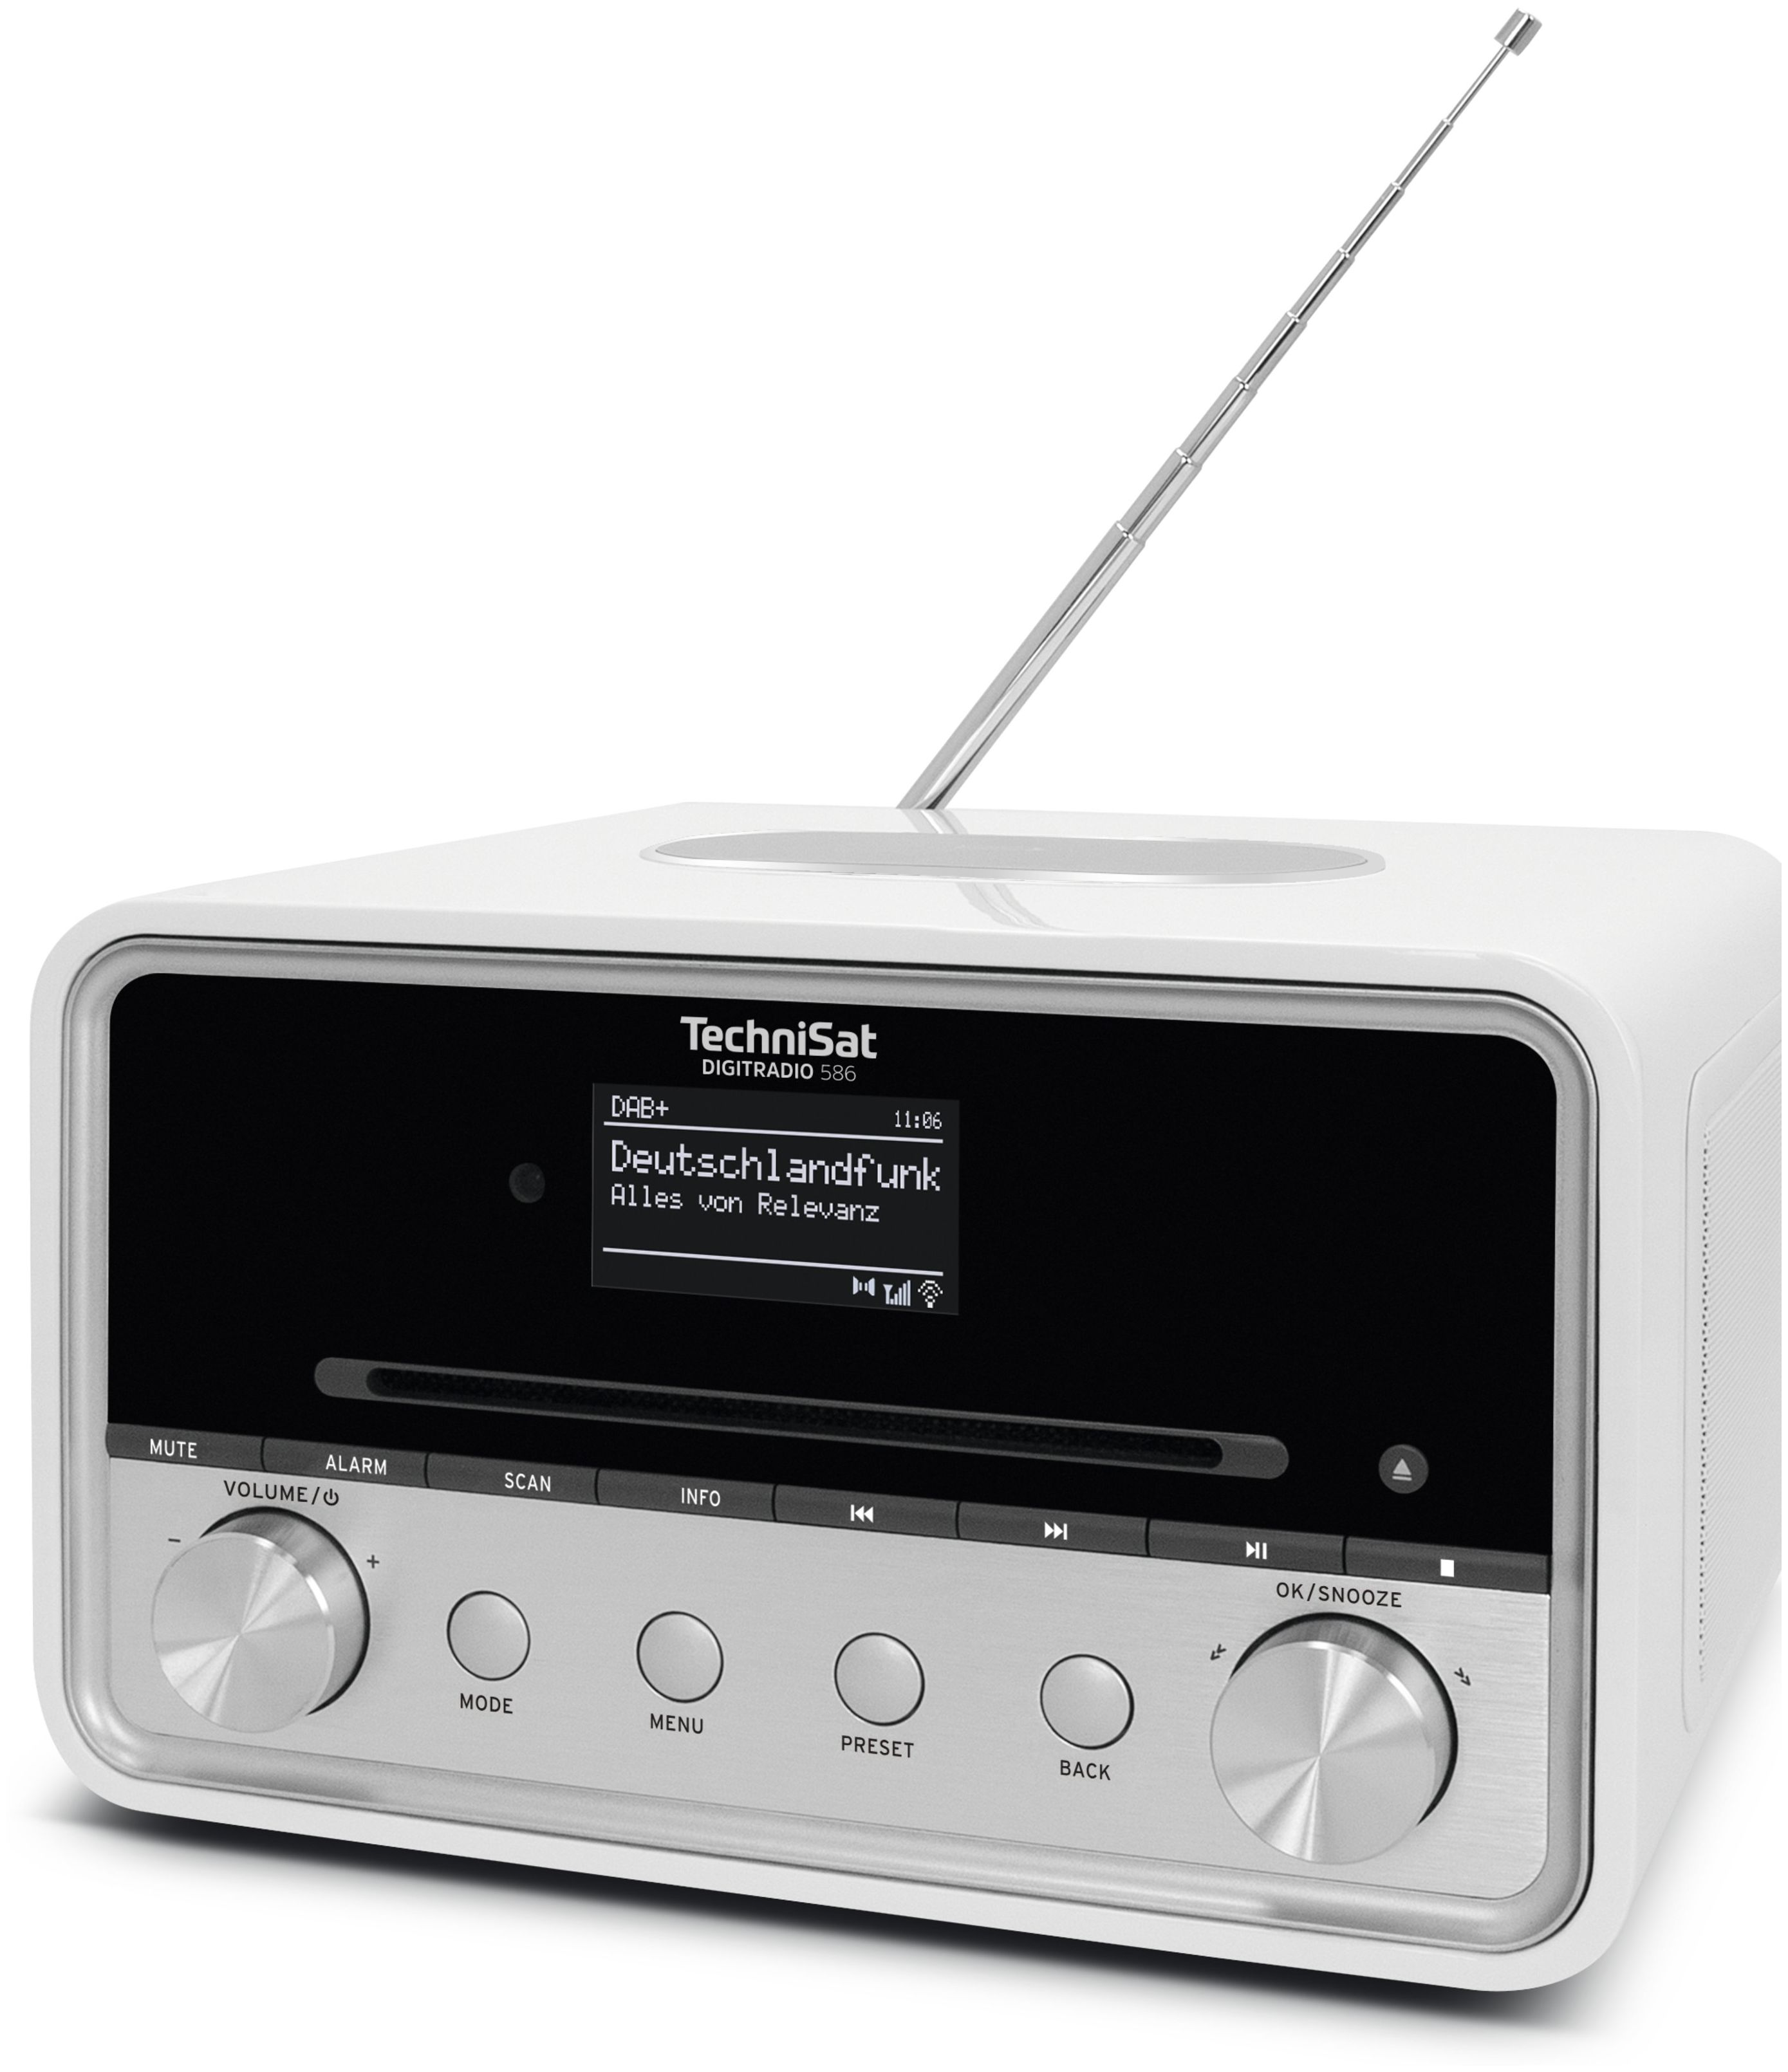 TechniSat Digitradio Boomstore 586 bei